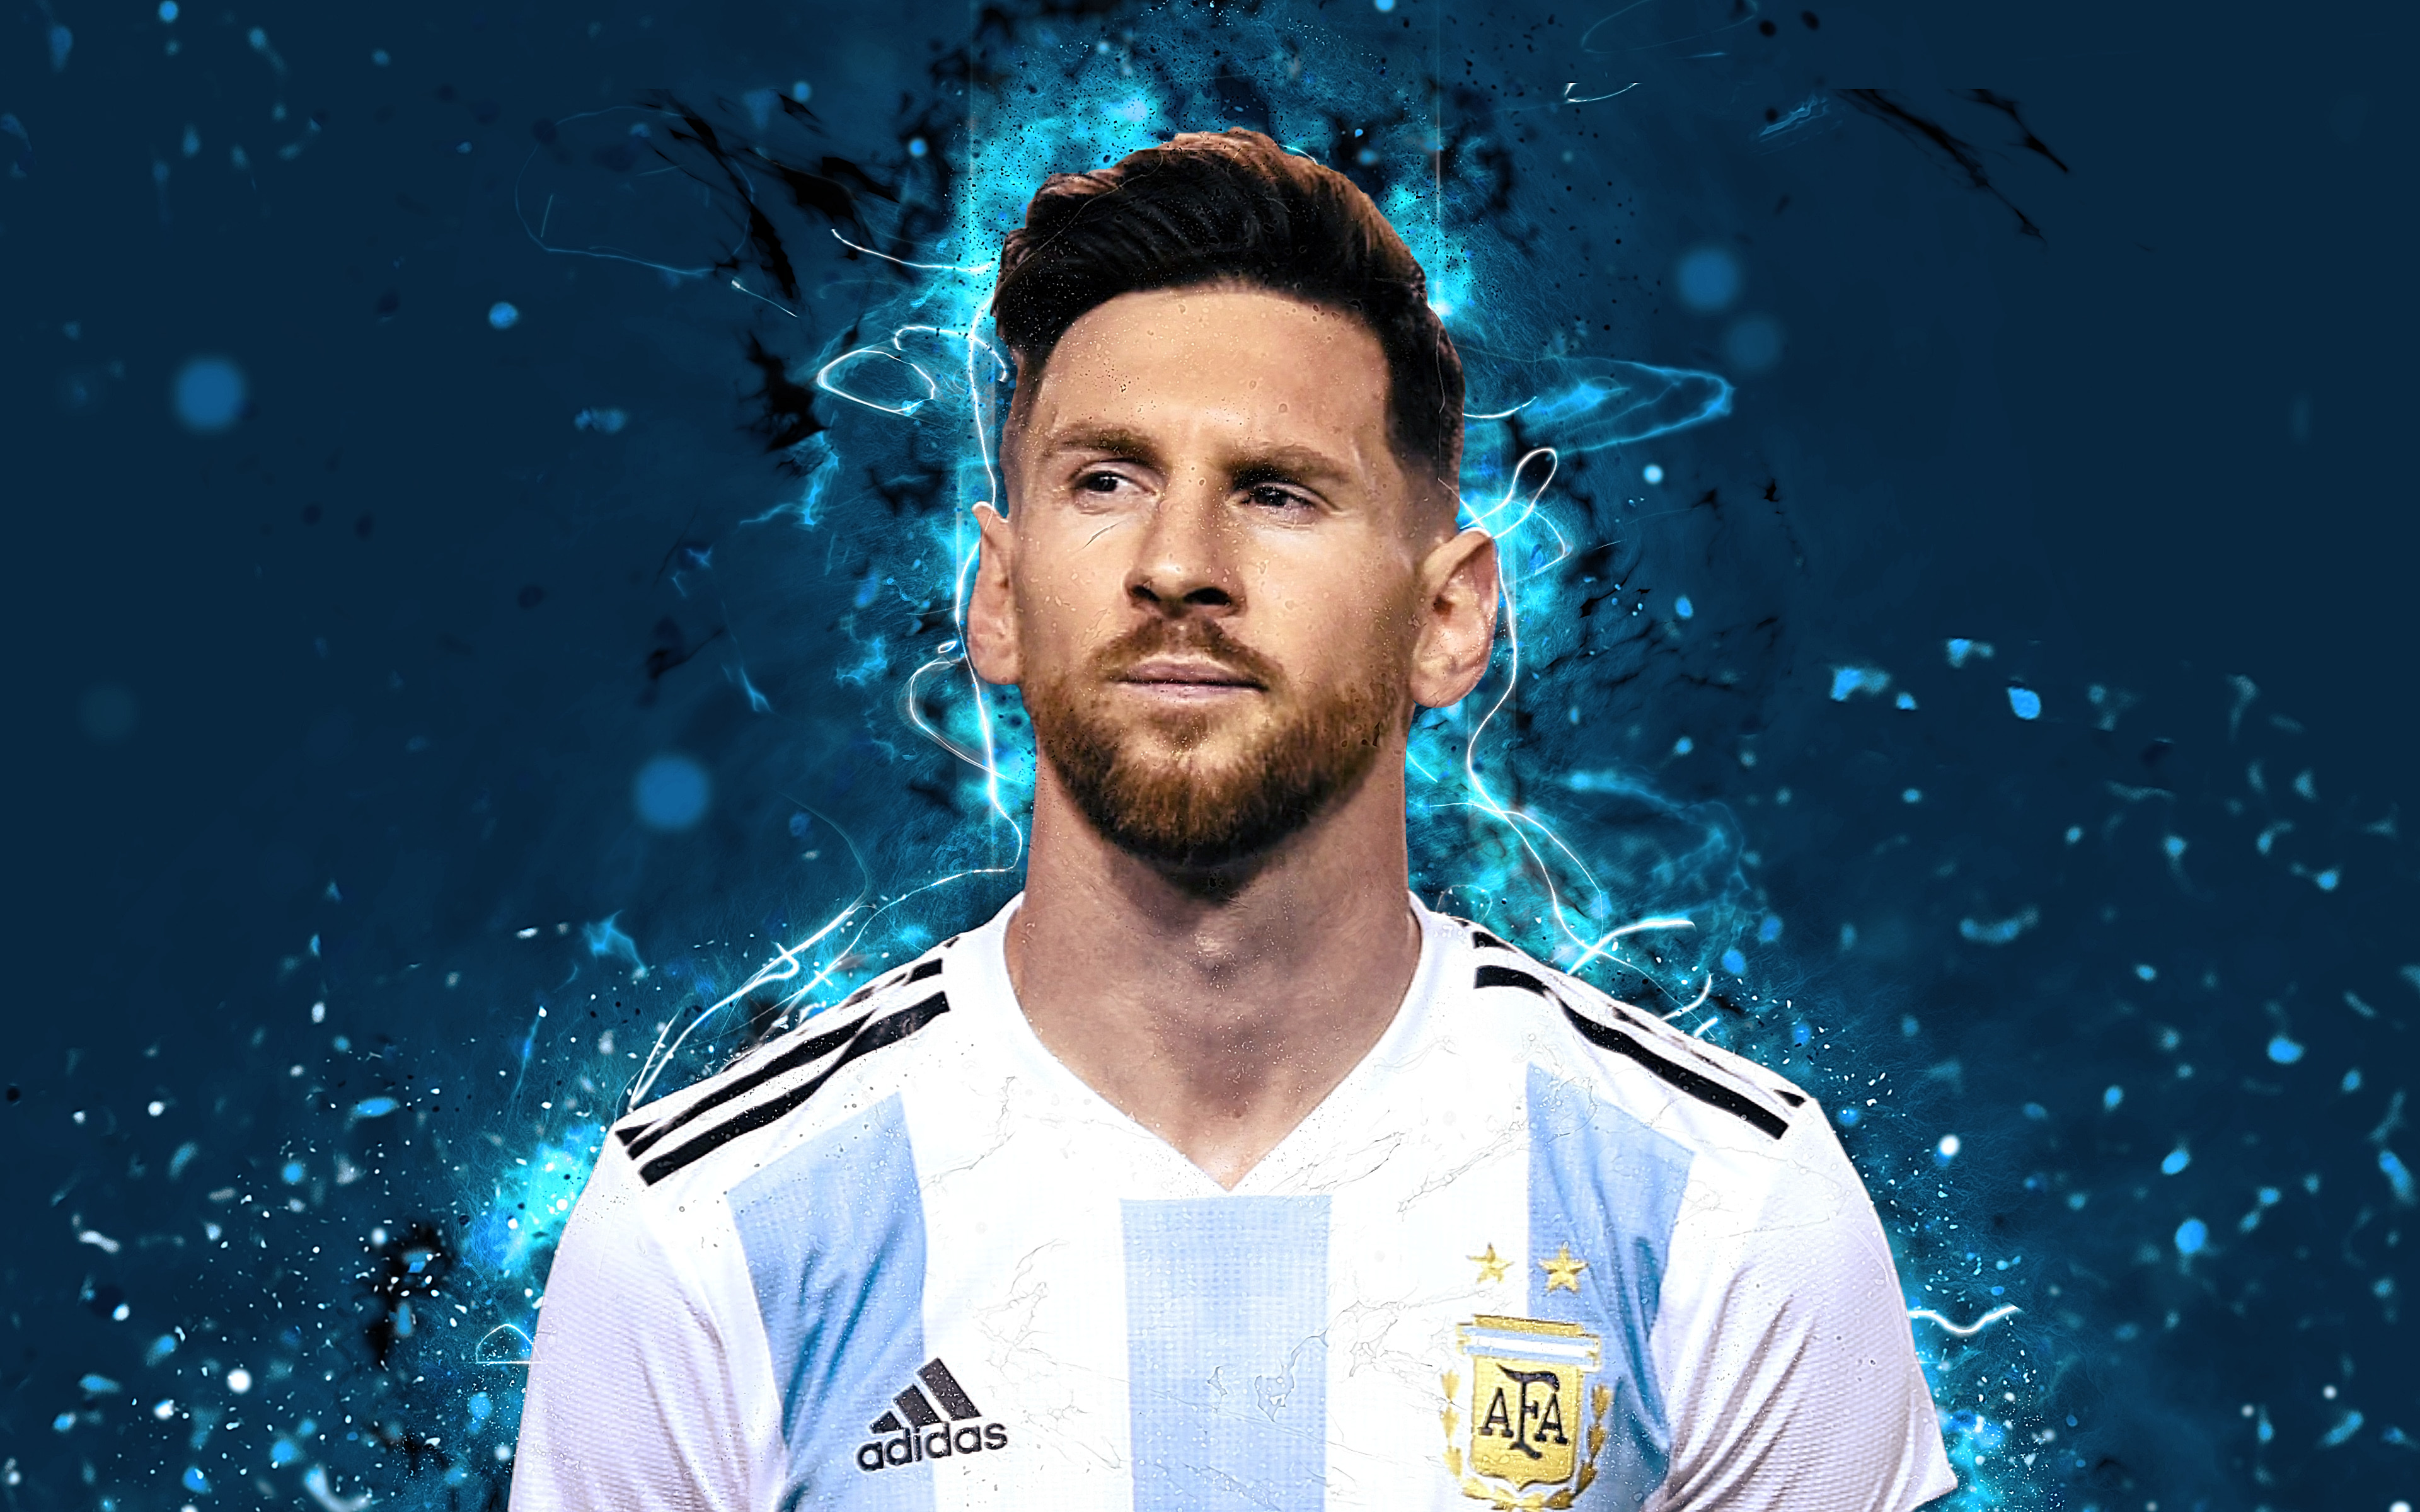 Hình nền Messi: Nếu bạn là một fan hâm mộ của Lionel Messi, hãy trang trí cho thiết bị của mình với những hình nền đầy năng lượng của Messi. Sẽ càng thú vị hơn khi xem ảnh cá nhân của anh ta.